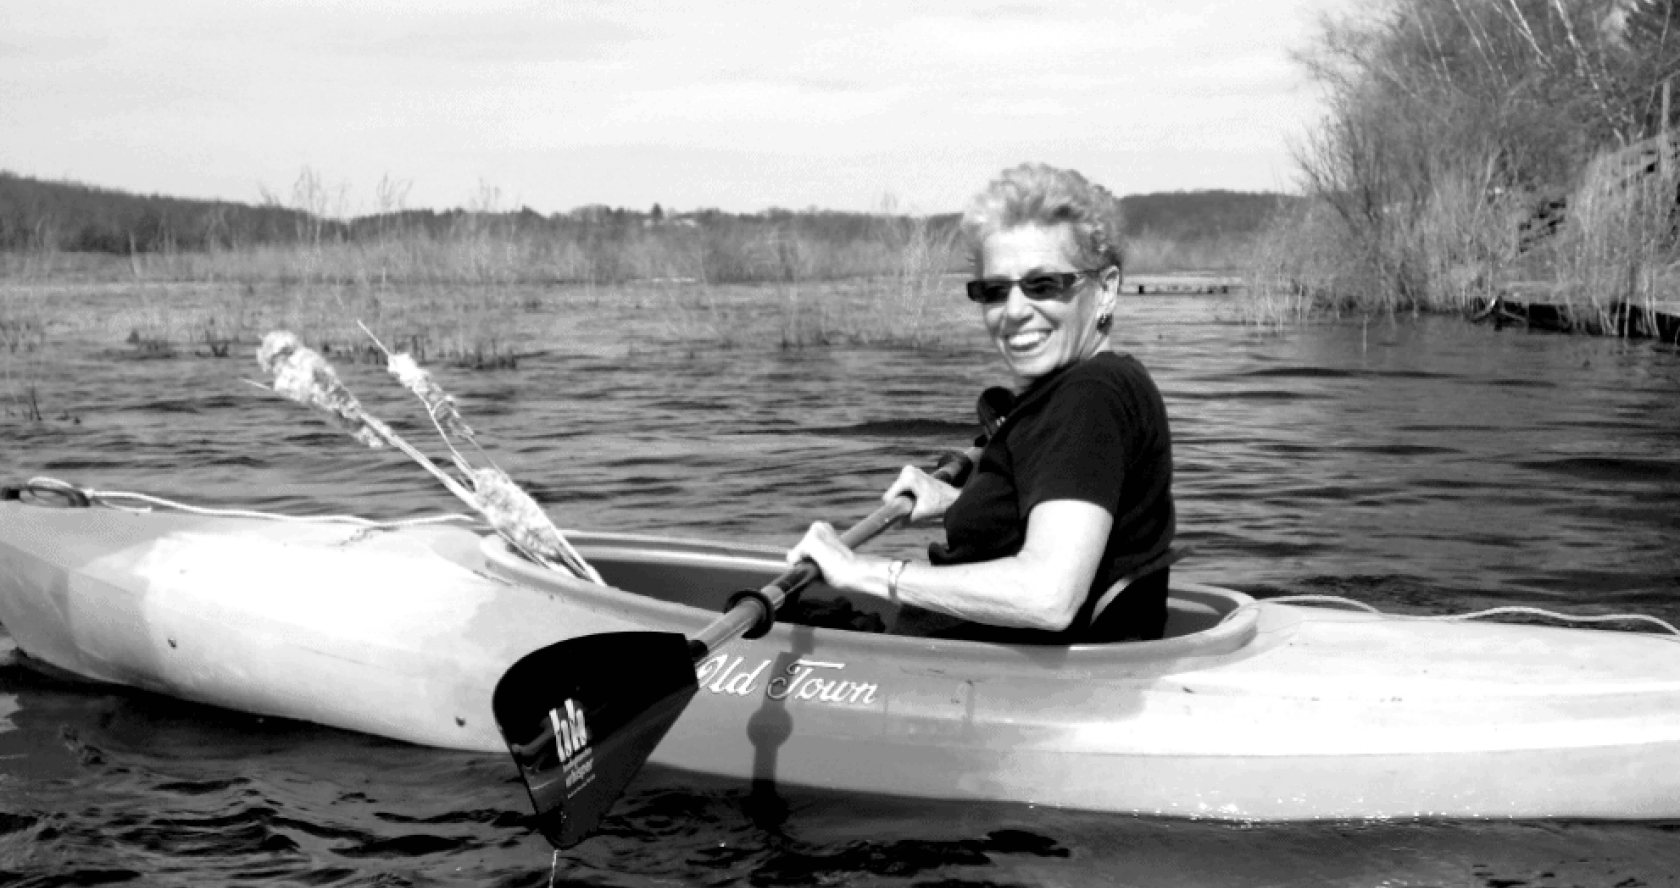 Barbara navega en Kayak